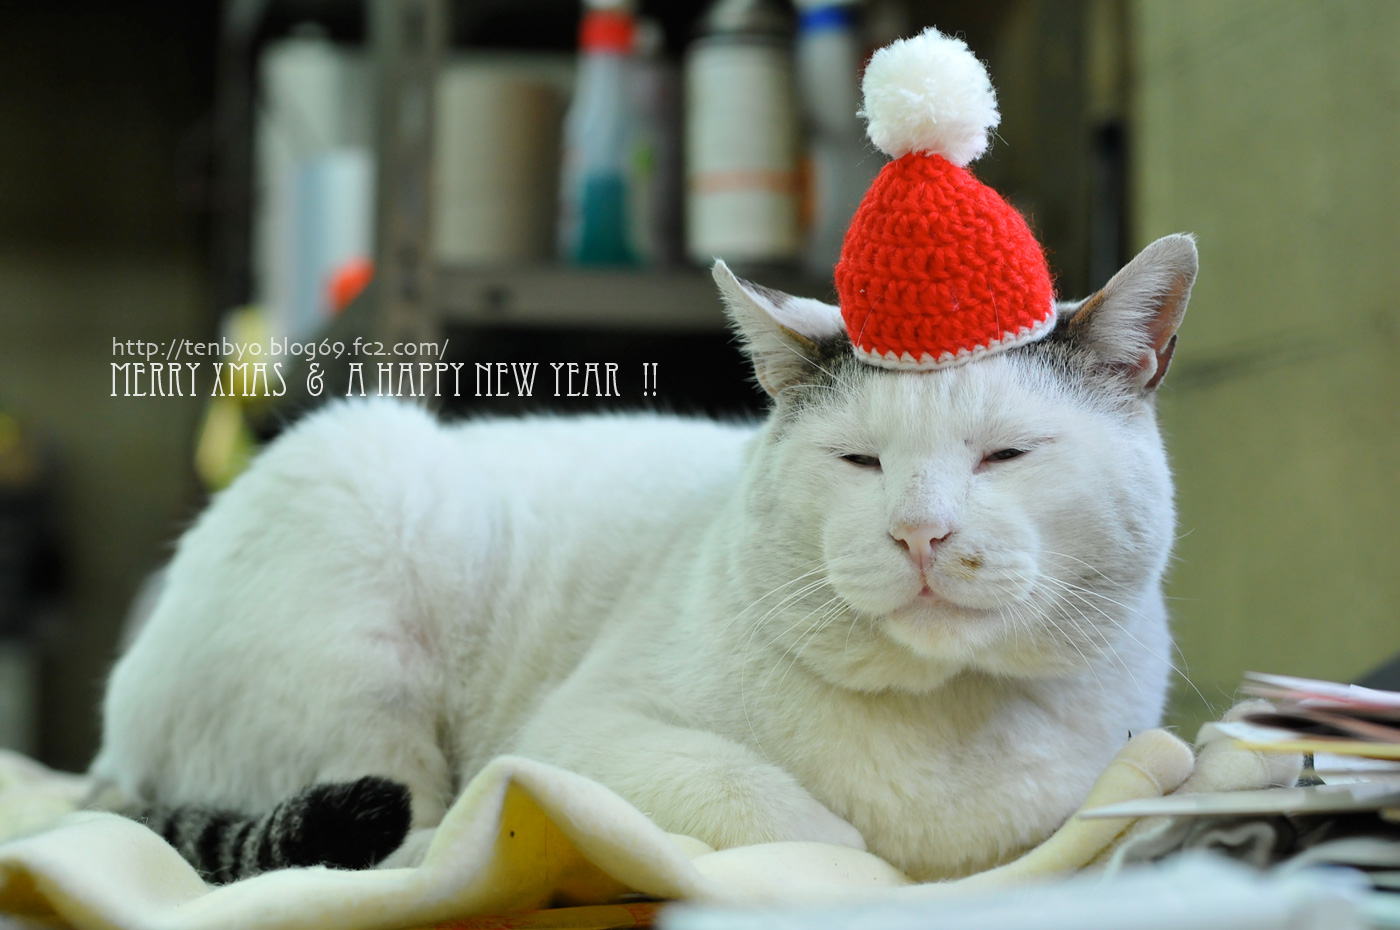 点猫 Blog 大阪の日曜猫写真家の猫写真平太から 季節のご挨拶